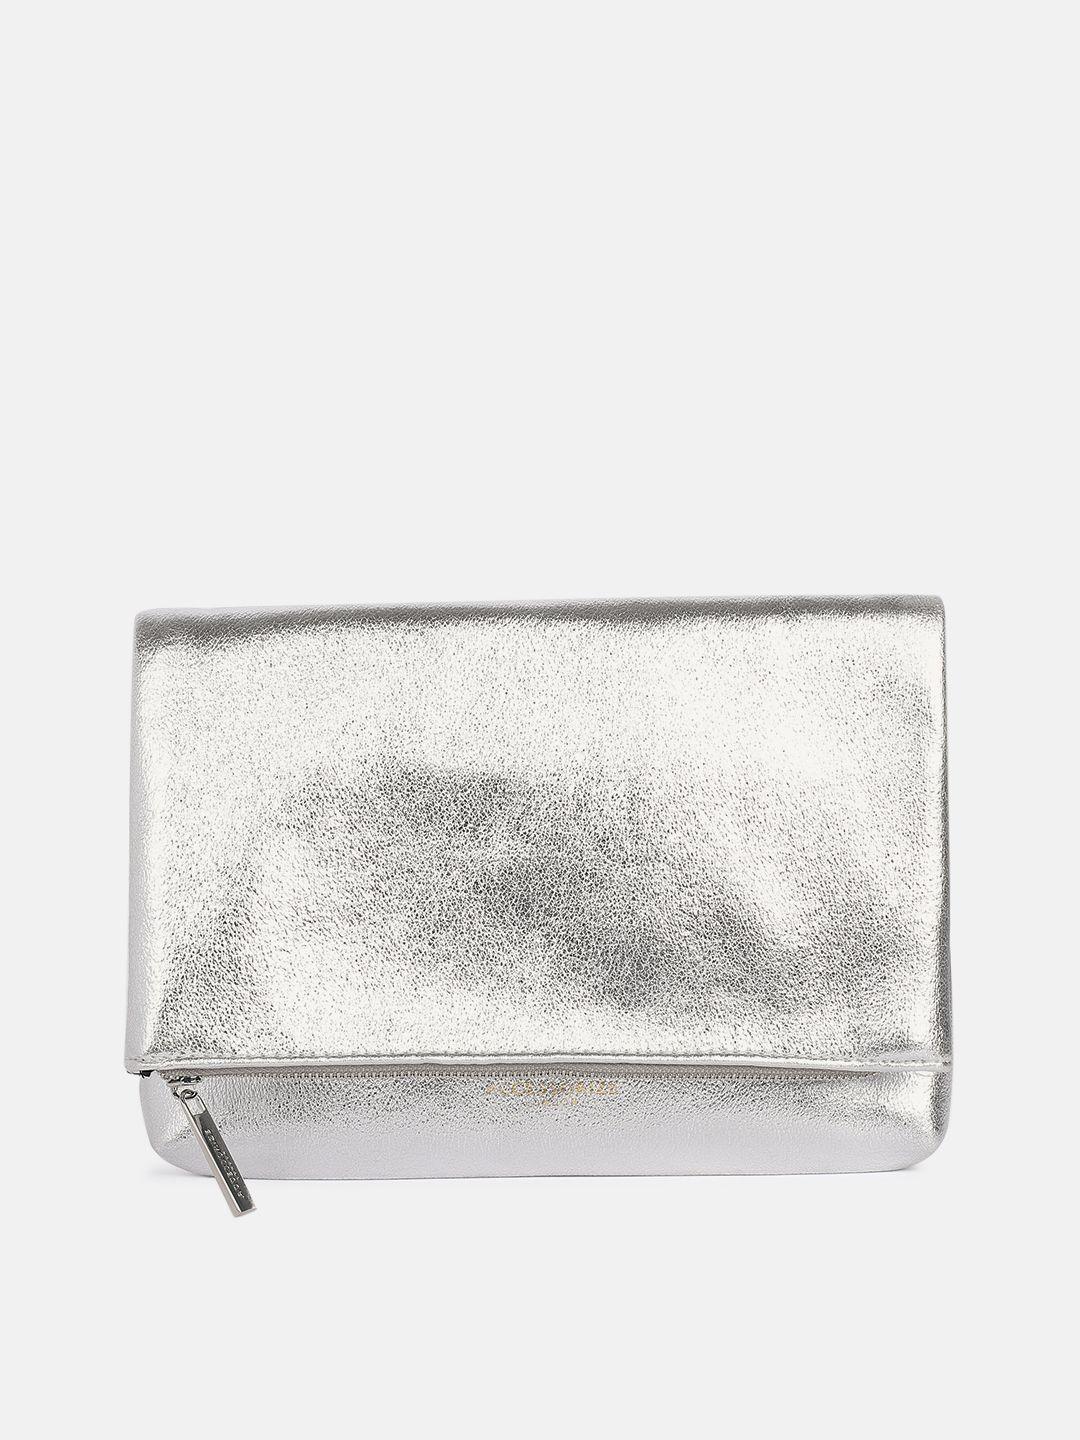 accessorize gunmetal-toned purse clutch